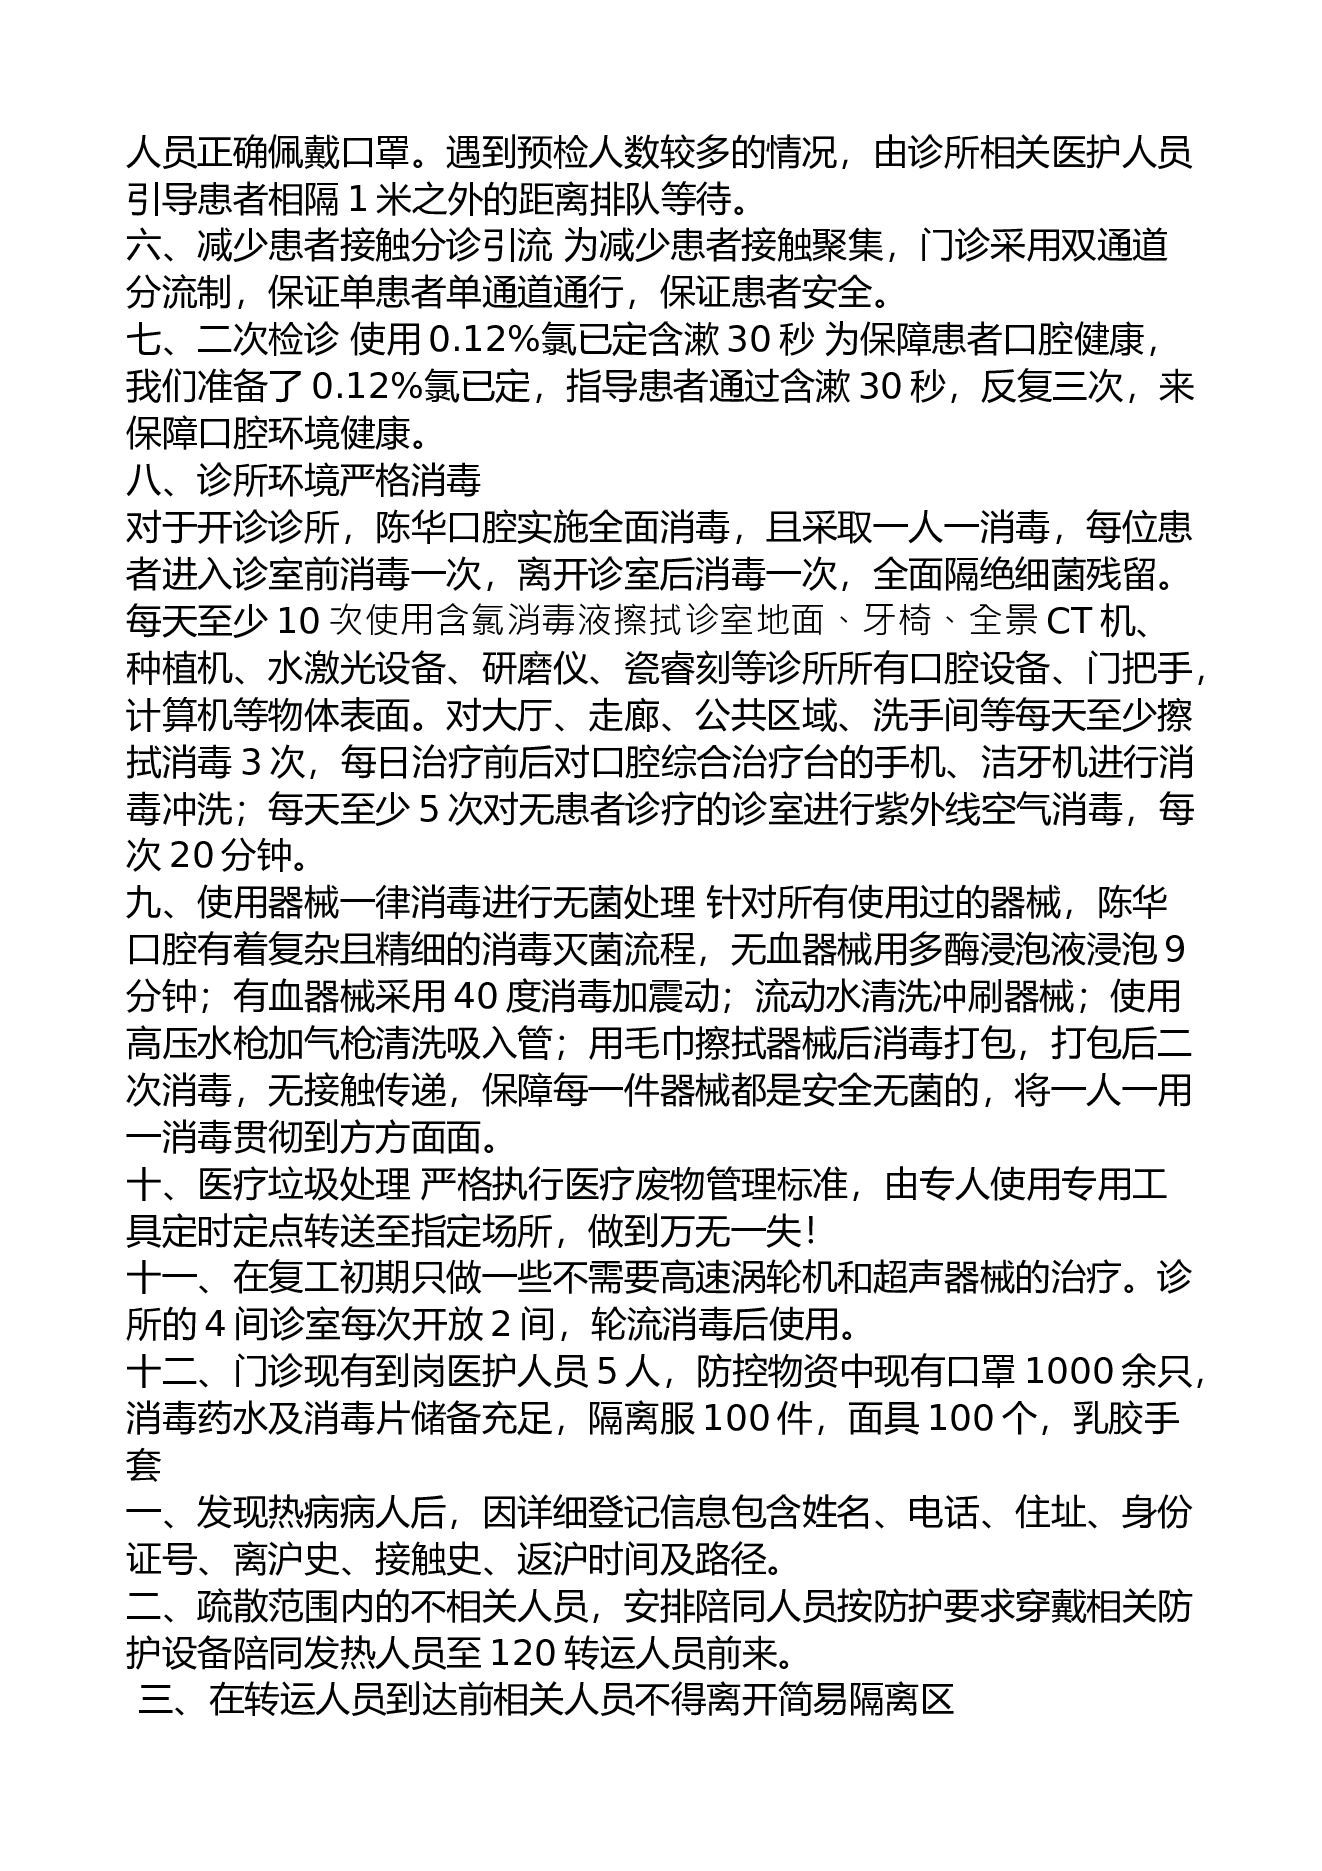 上海陈华口腔诊所复工申请报告